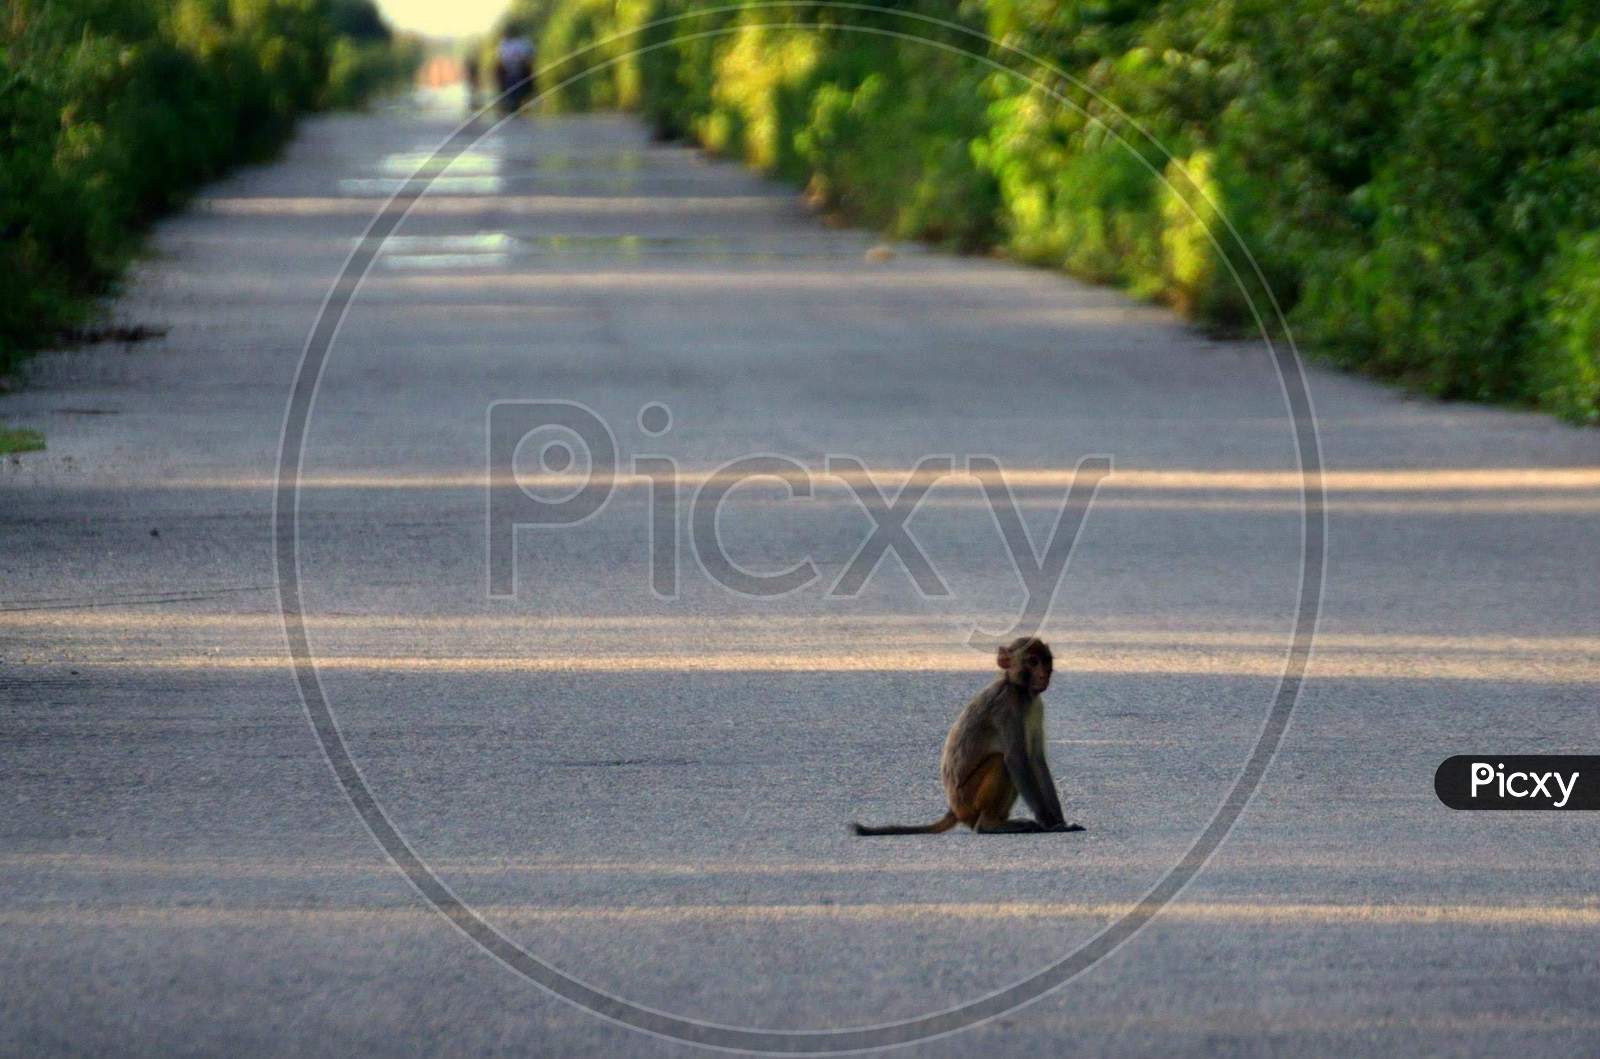 Monkey lost in a Road